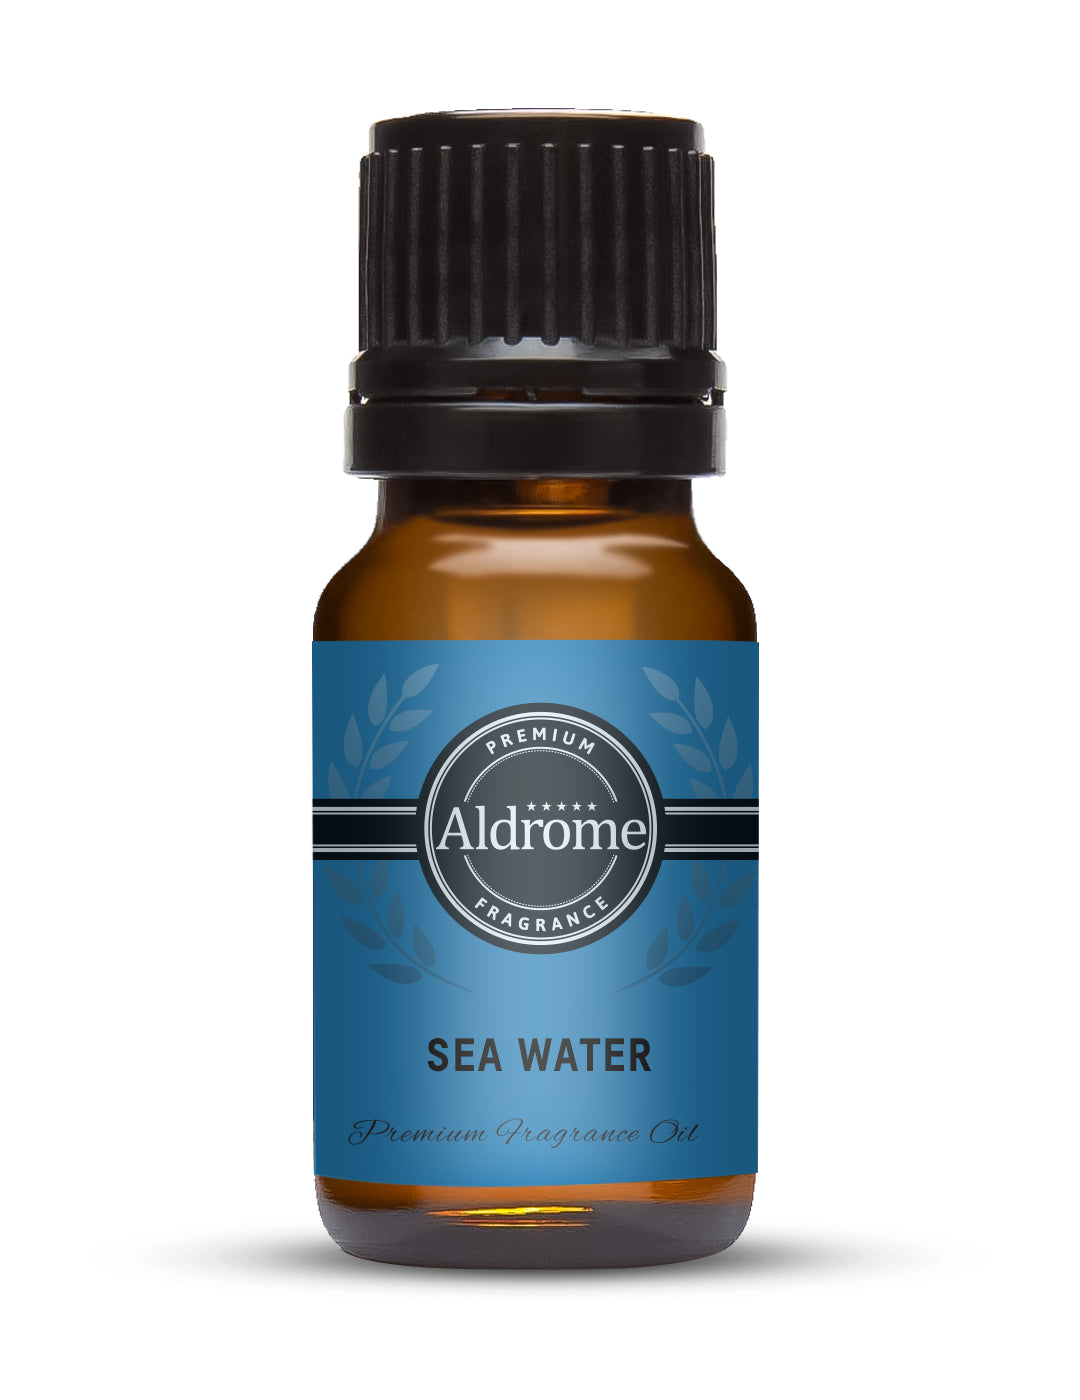 Sea Water Fragrance Oil - 10ml | Buy Sea Water Fragrance Oil | Aldrome Premium Fragrance Oil